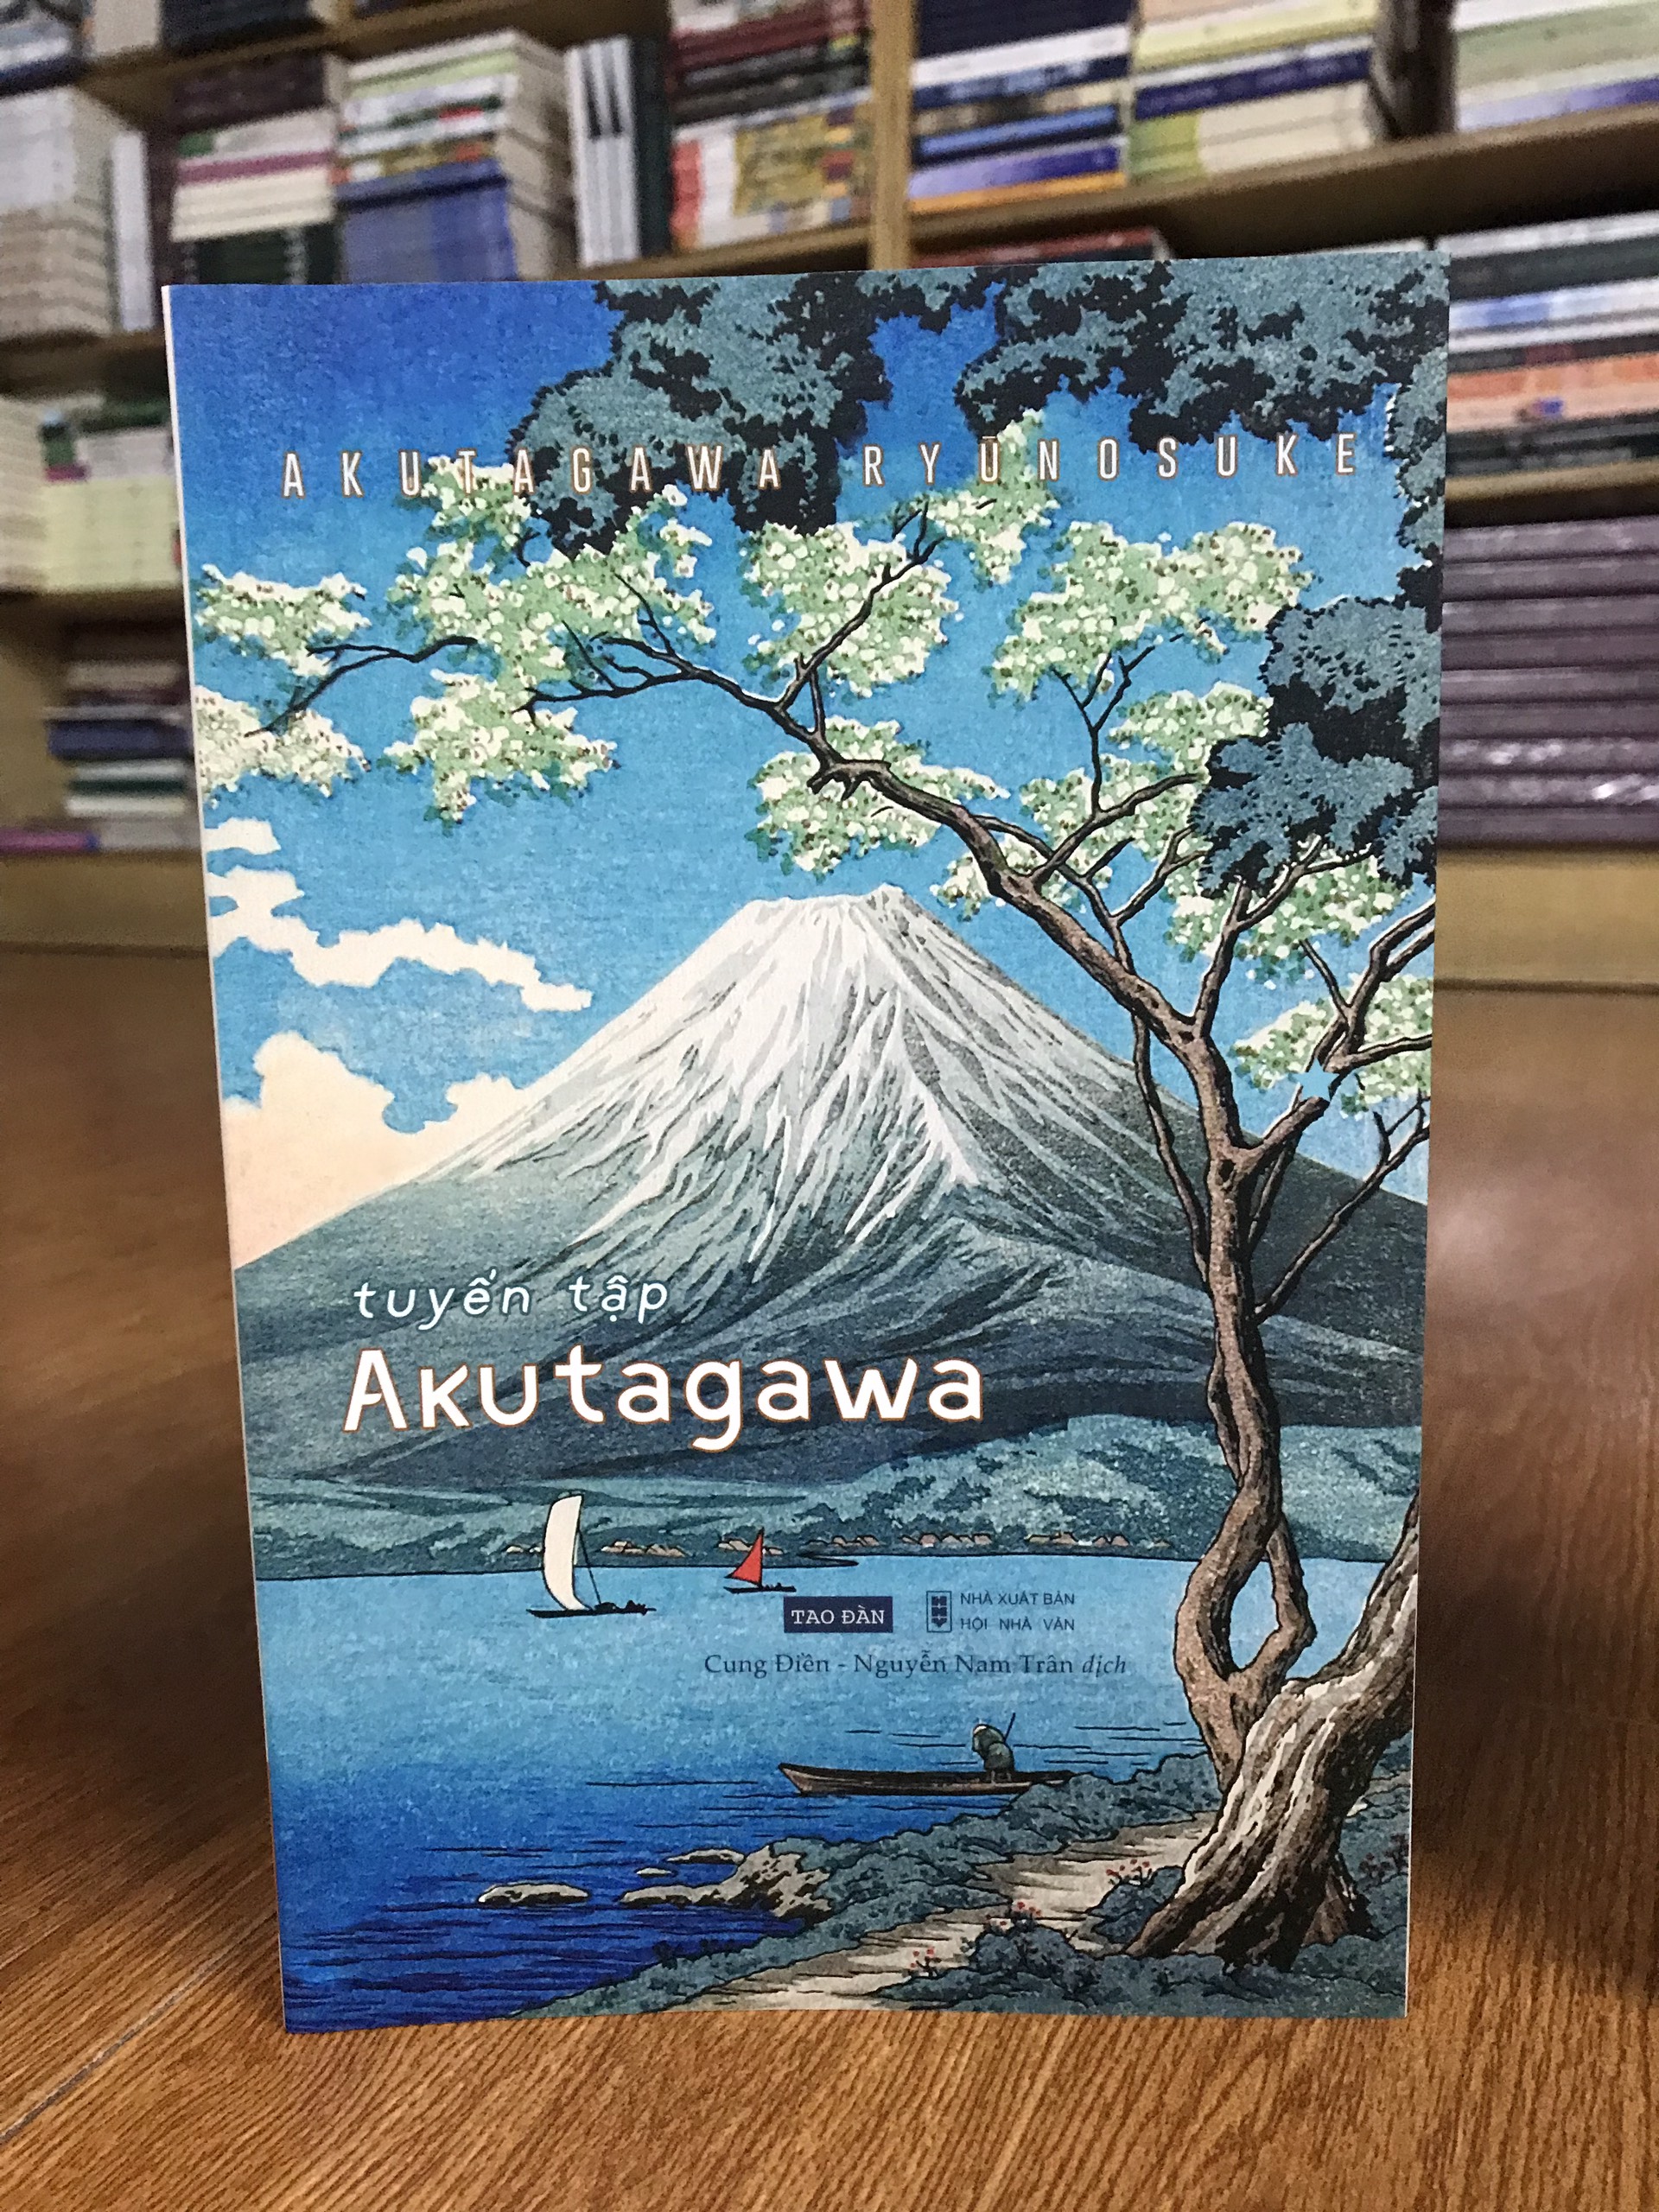 Hợp tuyển các tác phẩm hay nhất văn học Nhật Bản: Biên niên ký chim vặn dây cót + Tuyển tập Mori Ogai + Tuyển tập Akutagawa + Chết giữa mùa hè (tặng kèm bookmark)